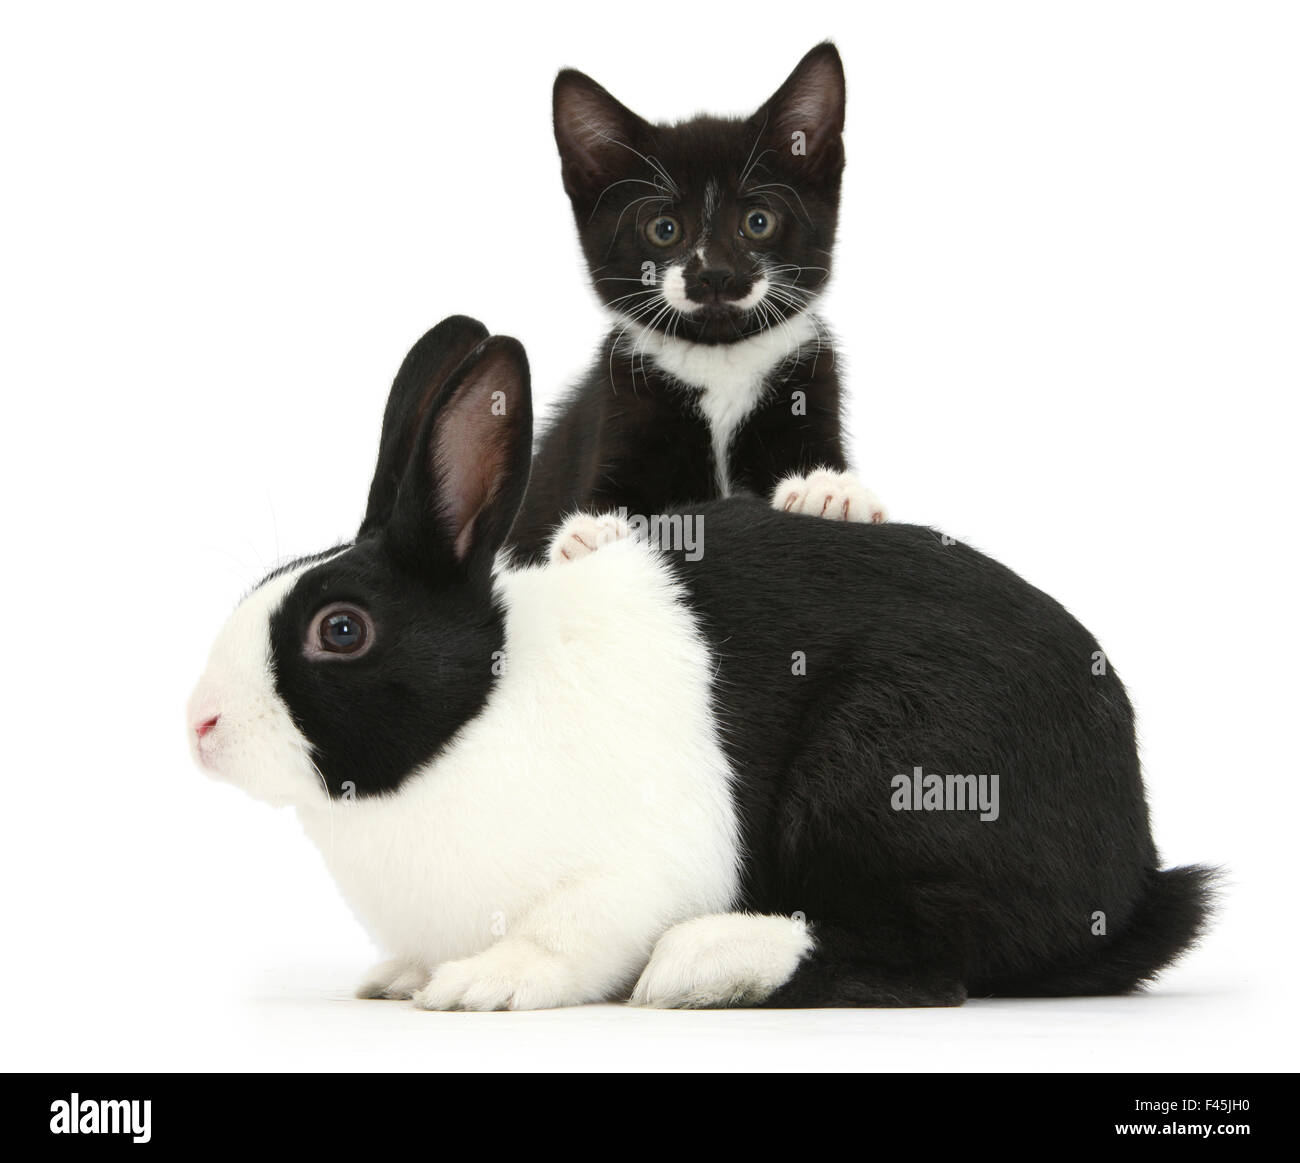 Schwarz-weißen Smoking männliches Jungtier, tuxie, 8 Wochen, mit schwarz-weißen Holländer Kaninchen, vor weißem Hintergrund Stockfoto